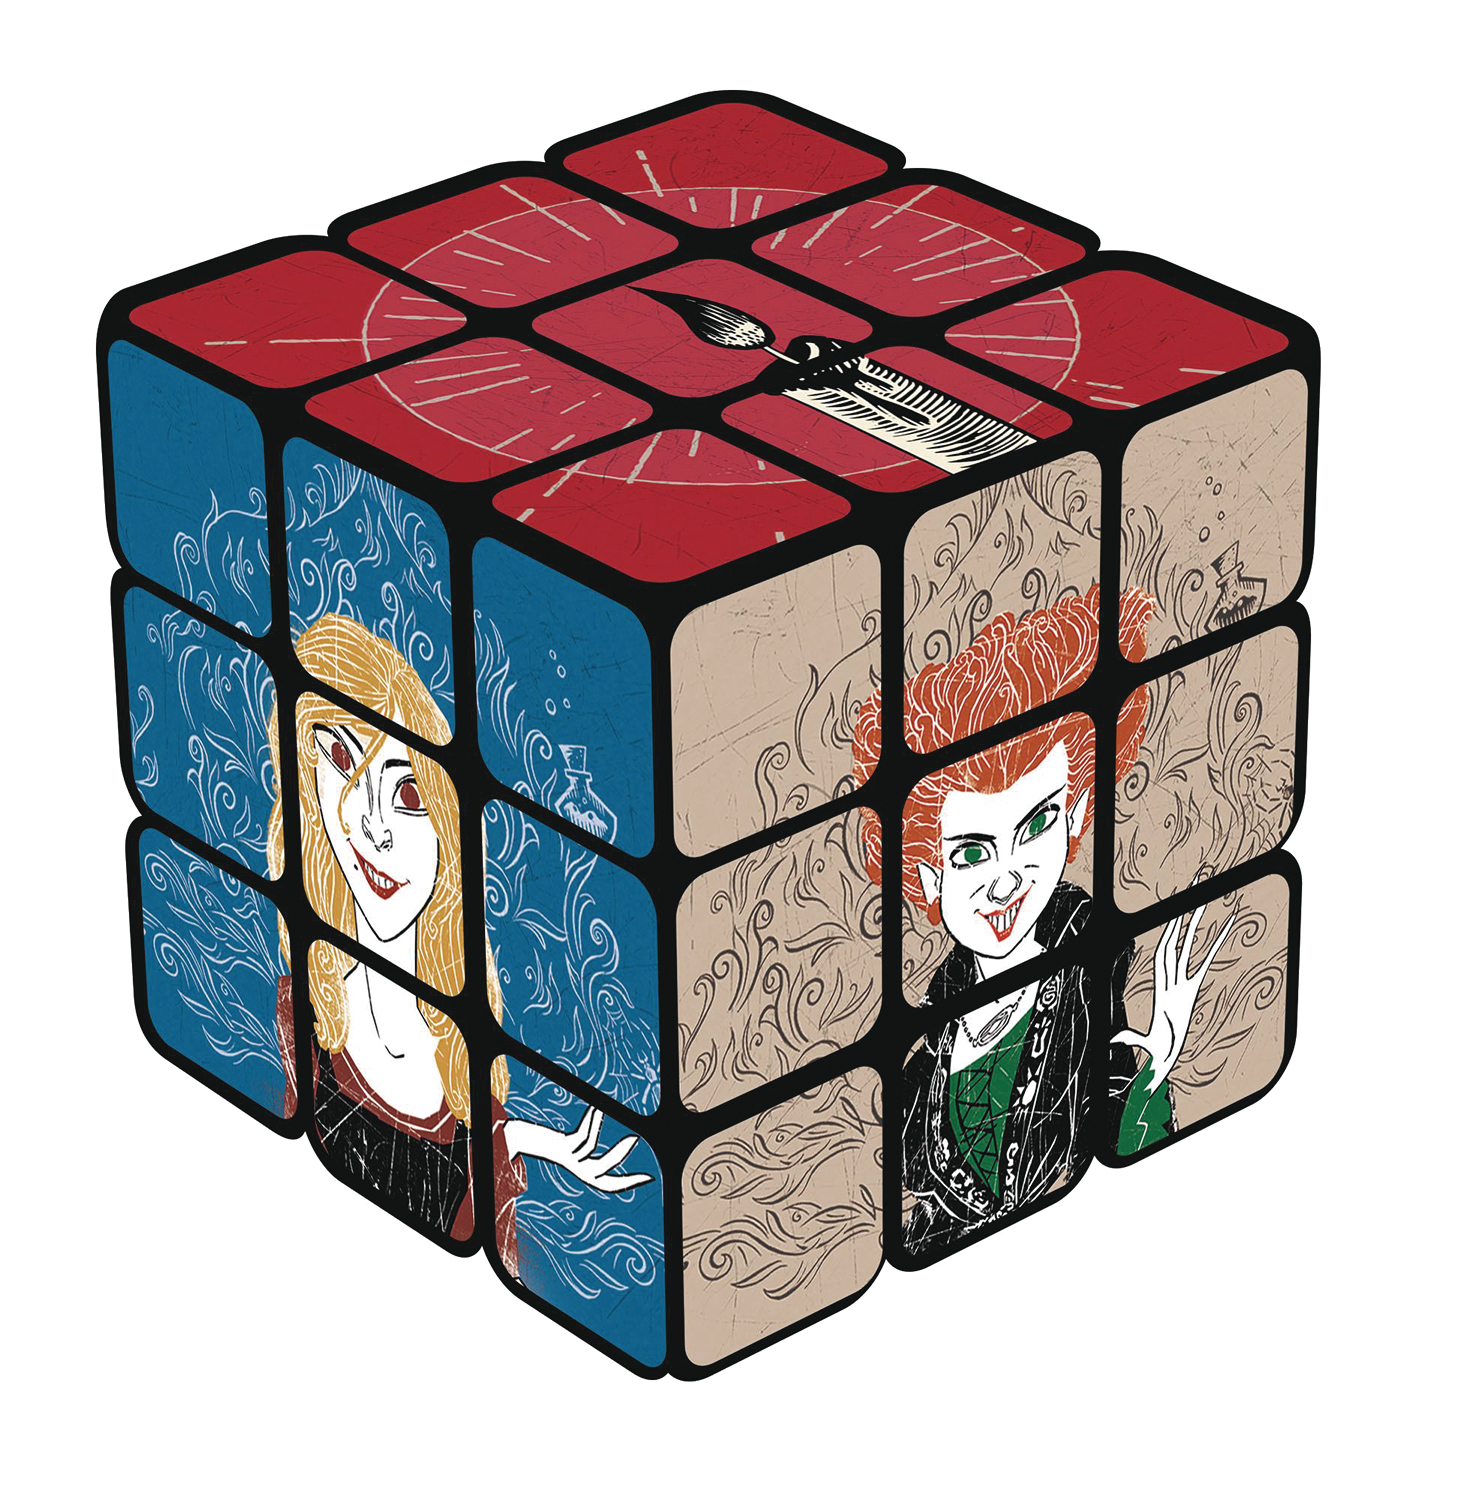 Rubiks Cube Hocus Pocus